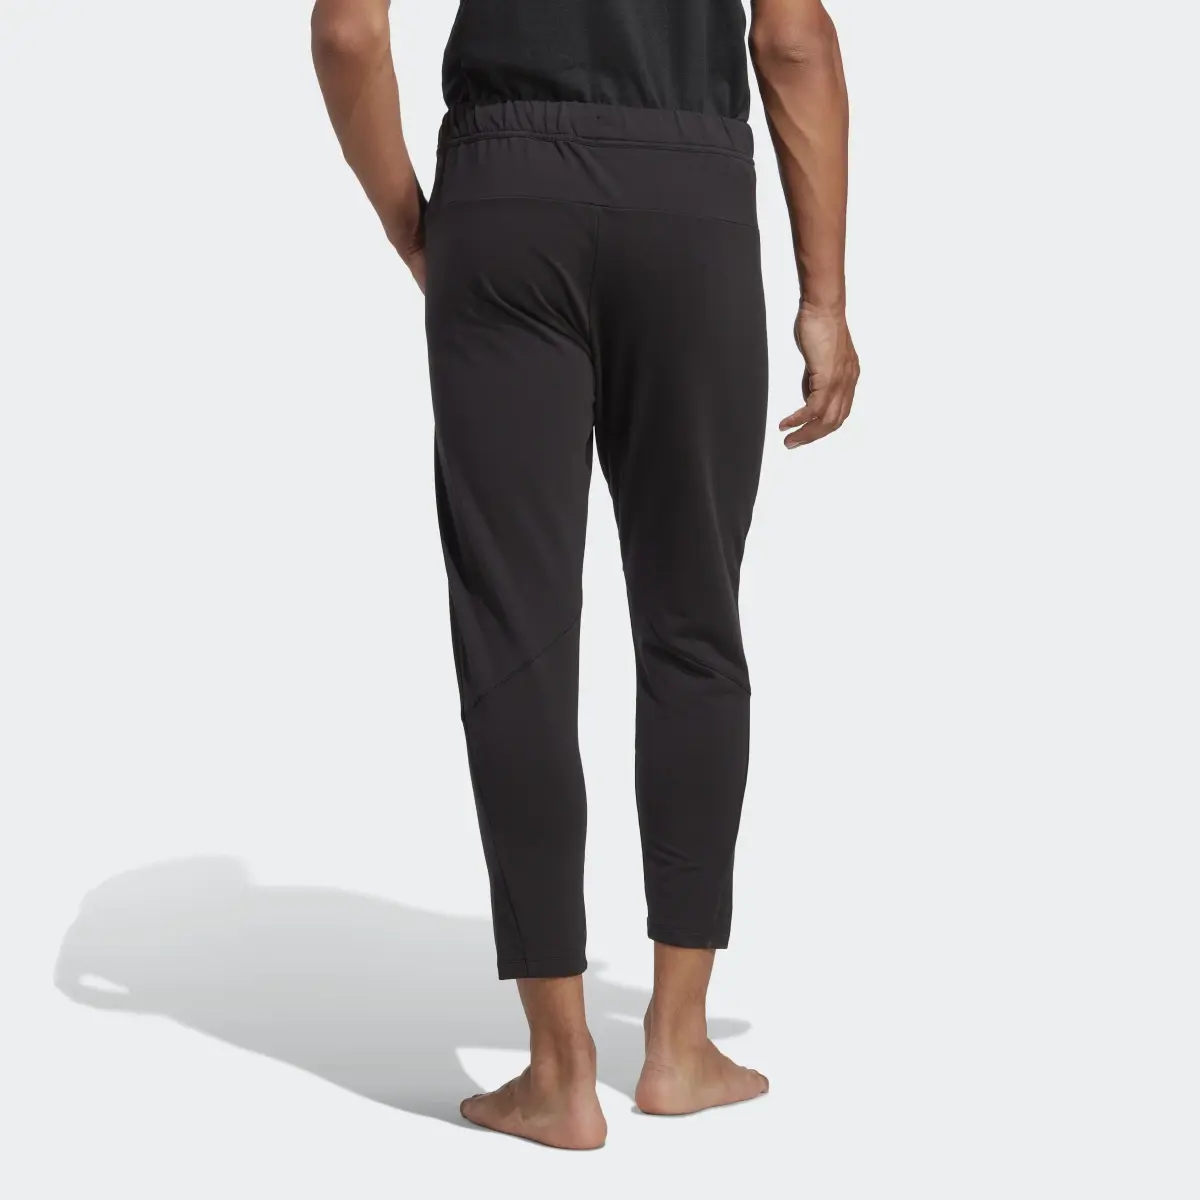 Adidas Designed for Training Yoga 7/8 Training Pants. 2